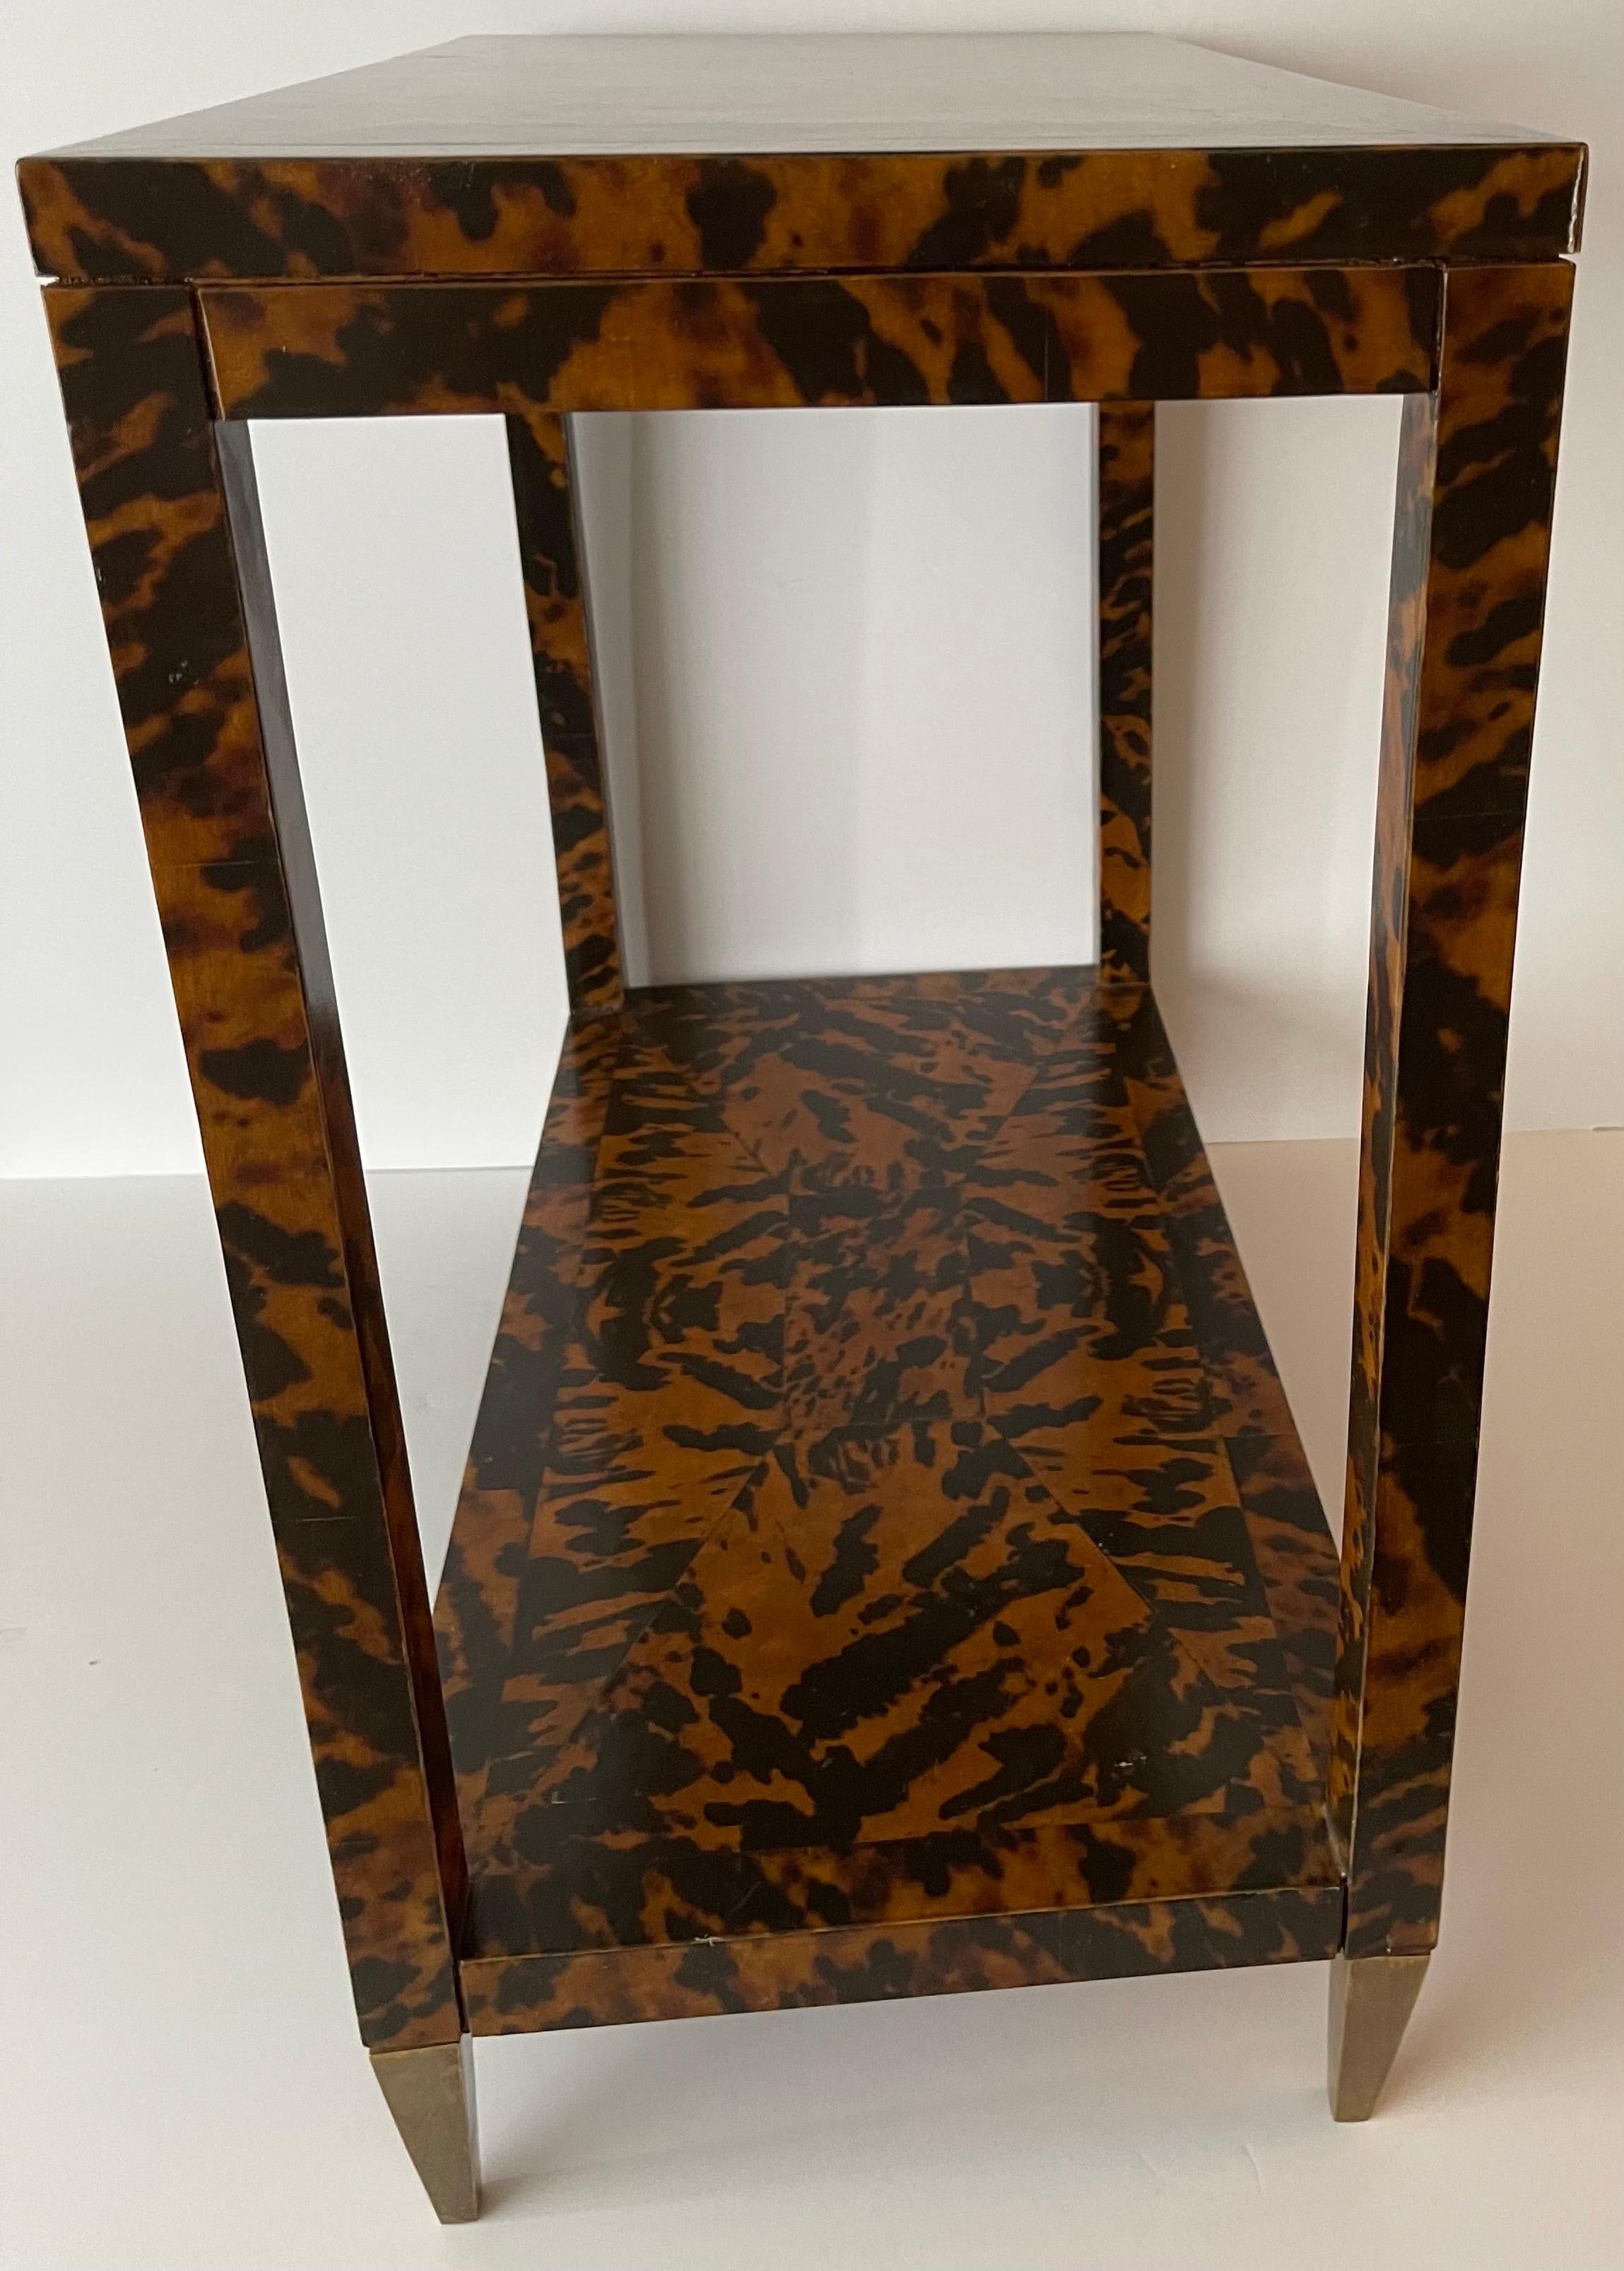 Modern Oscar de la Renta Home by Century Furniture Co. Faux Tortoise & Brass Side Table